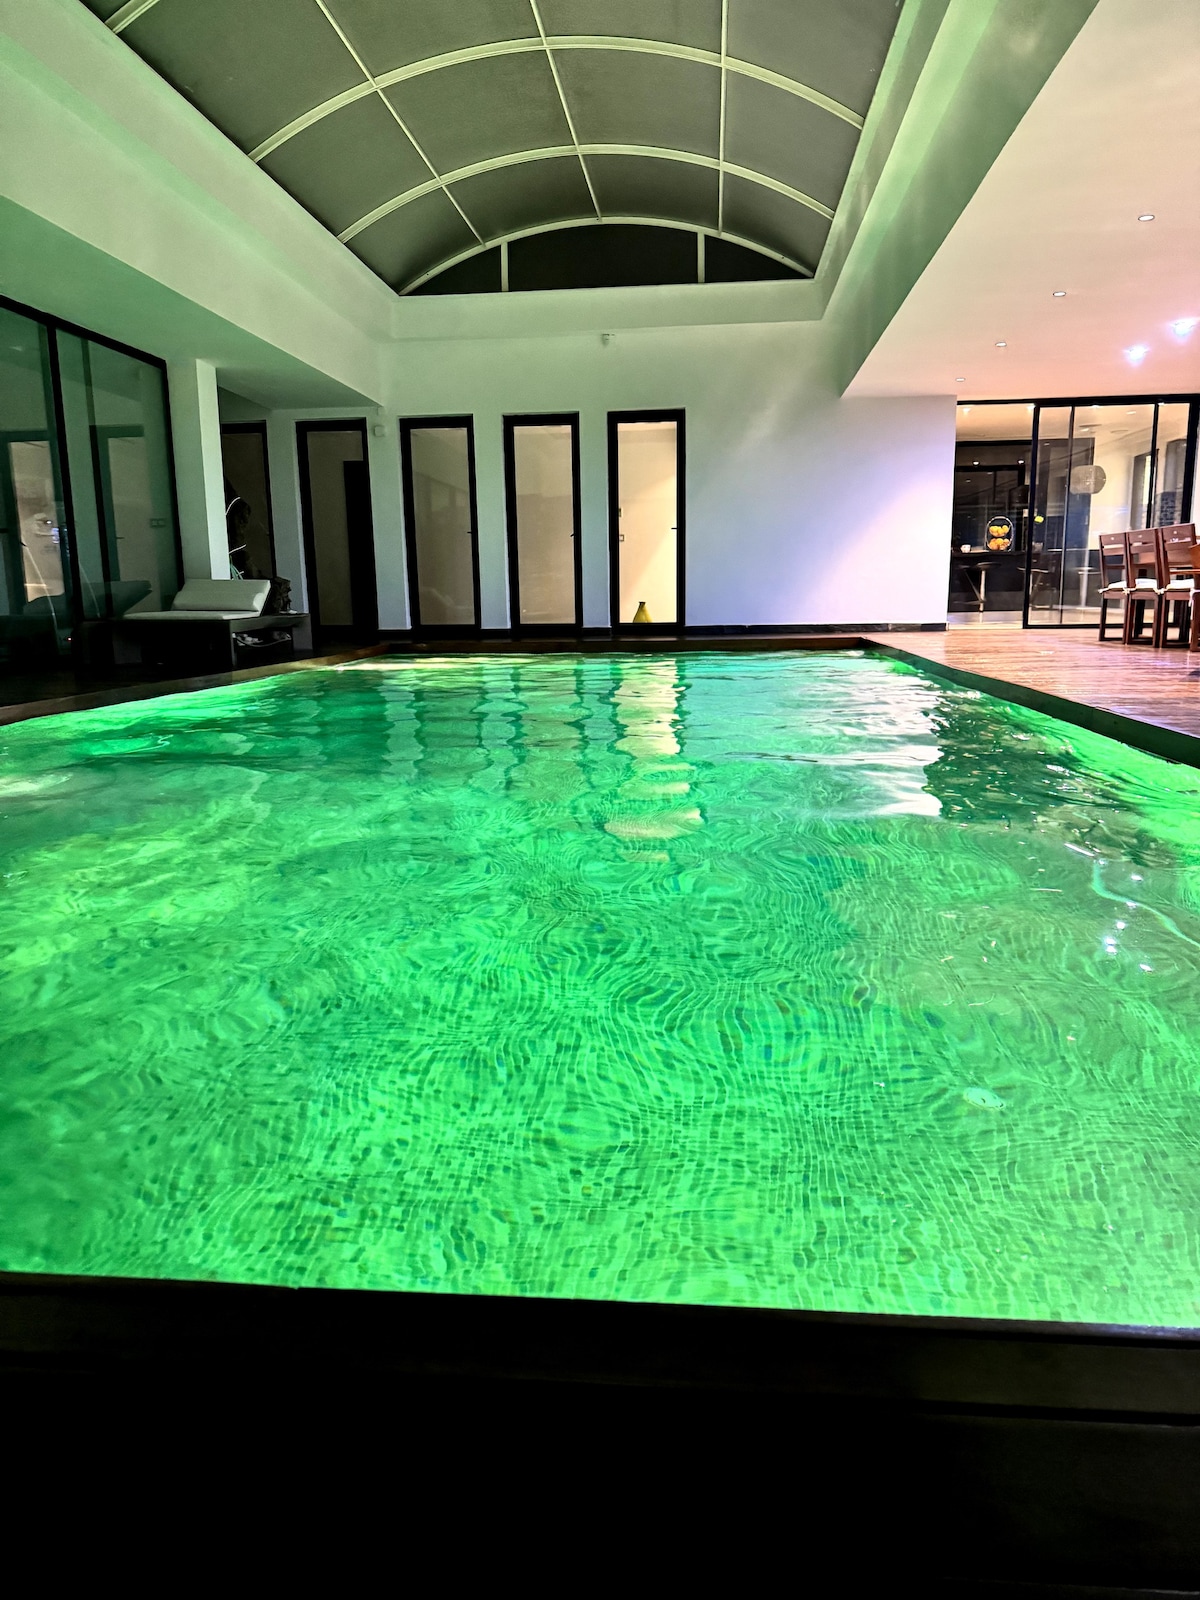 客人可在室内温水游泳池放轻松。